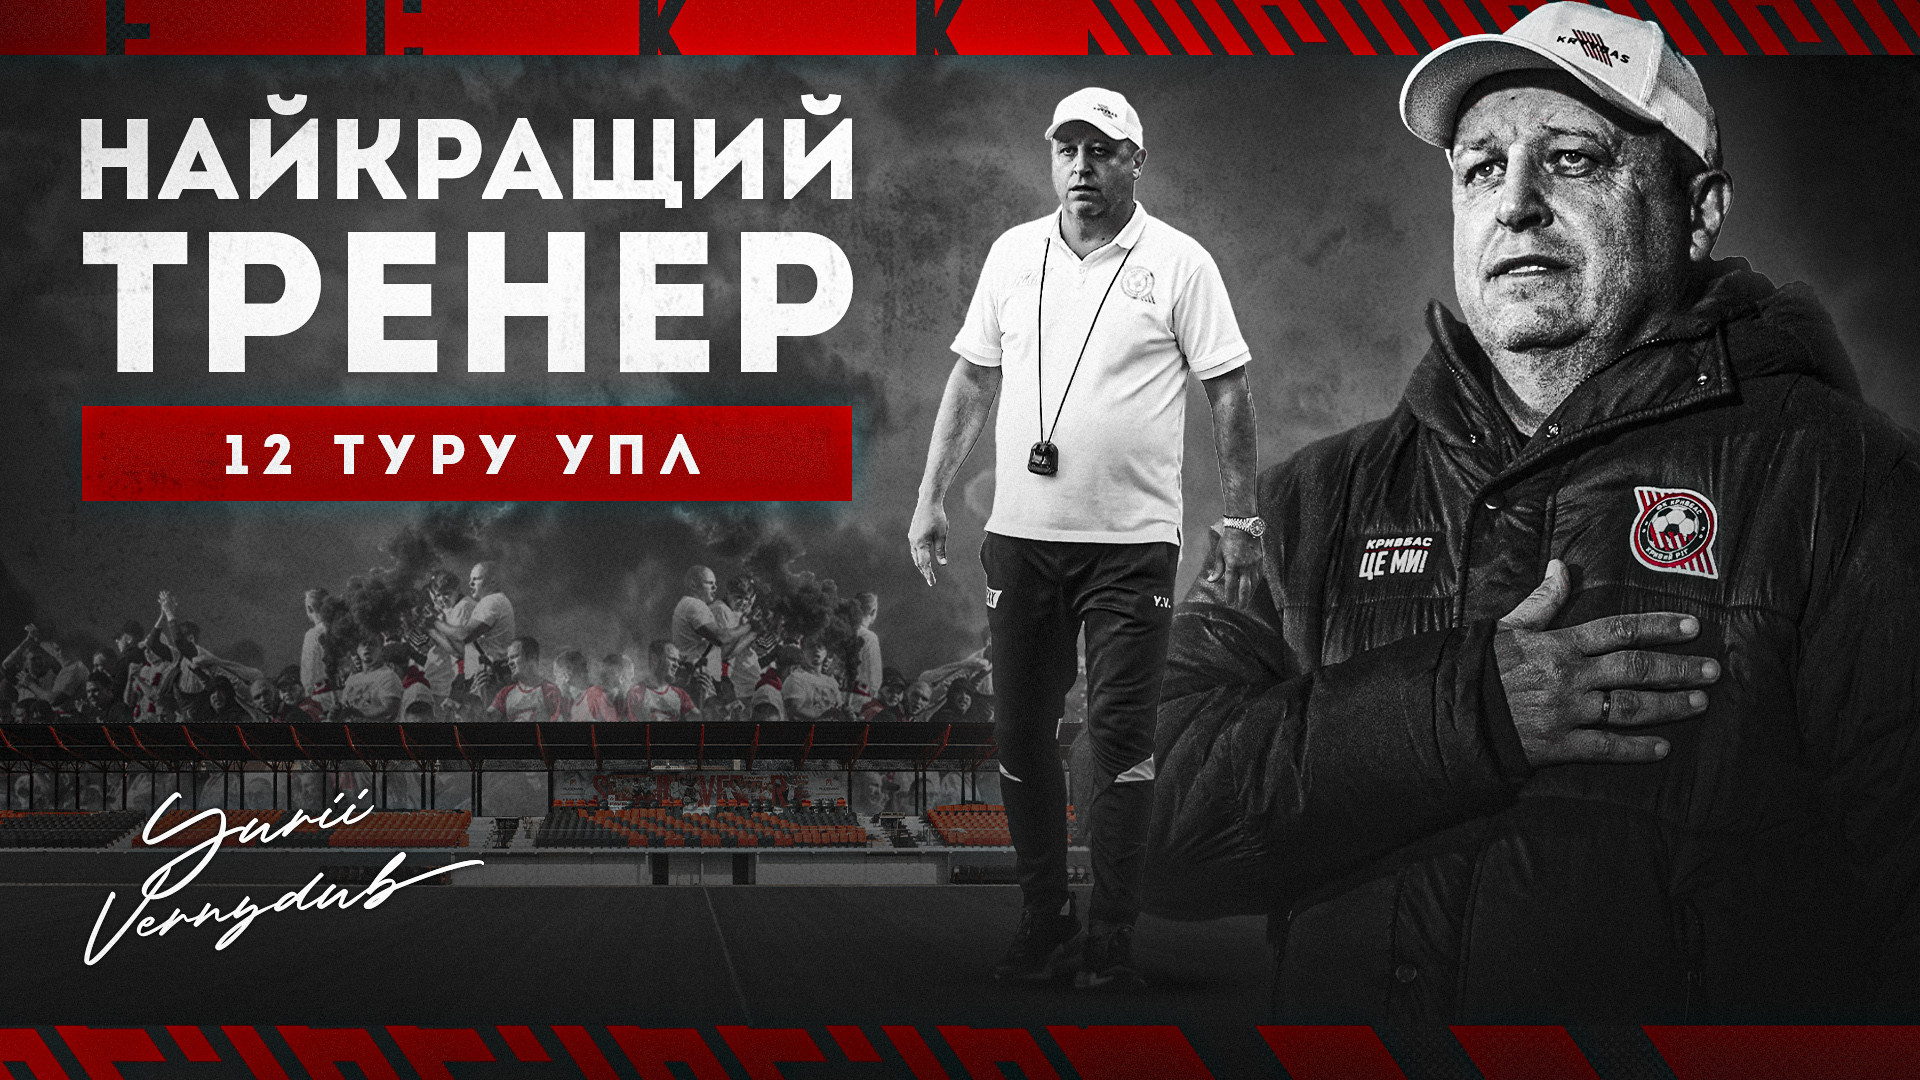 Юрій Вернидуб - найкращий тренер 12 туру УПЛ!}